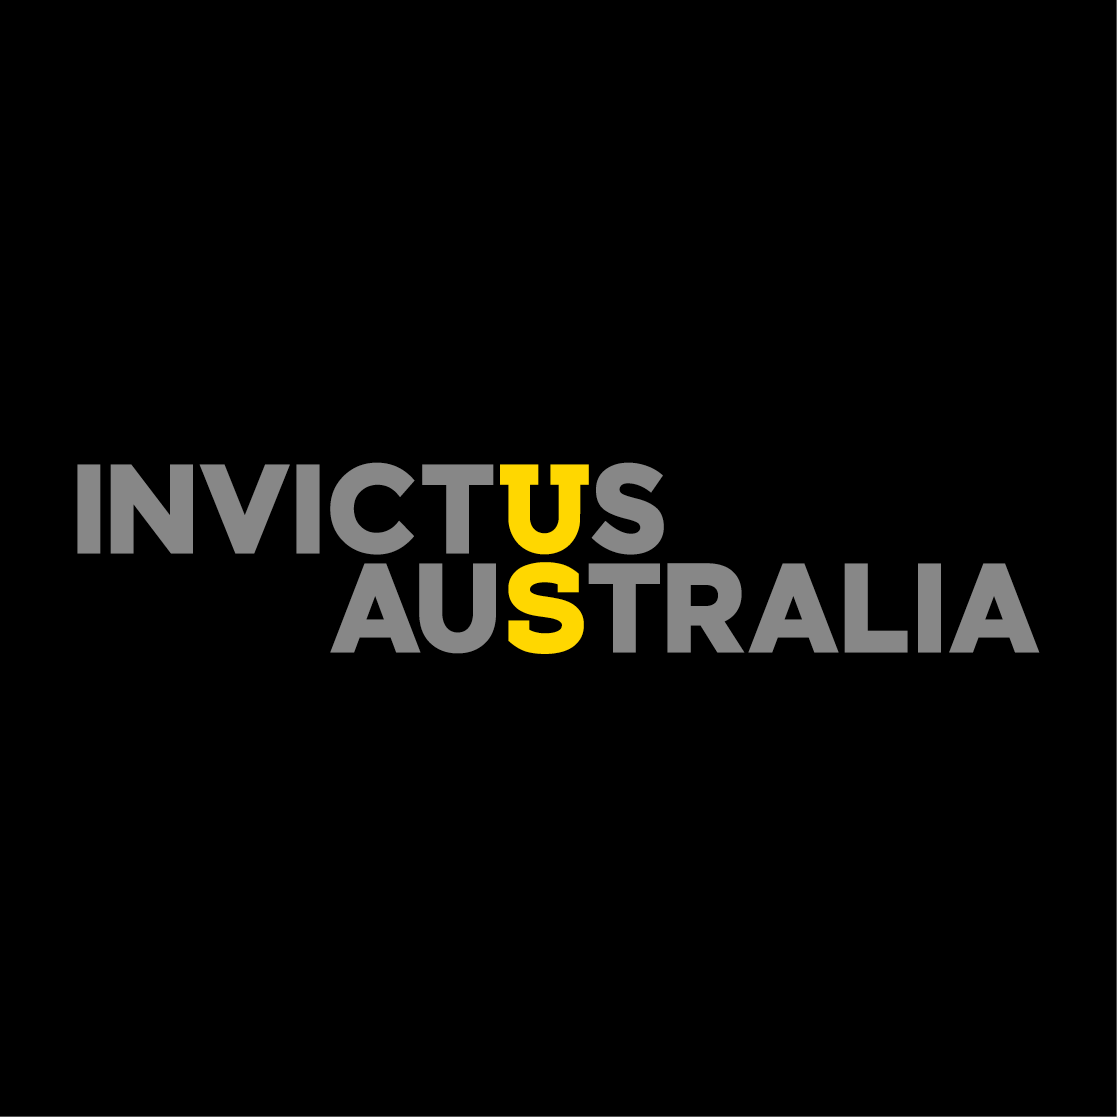 Invictus Australia logo